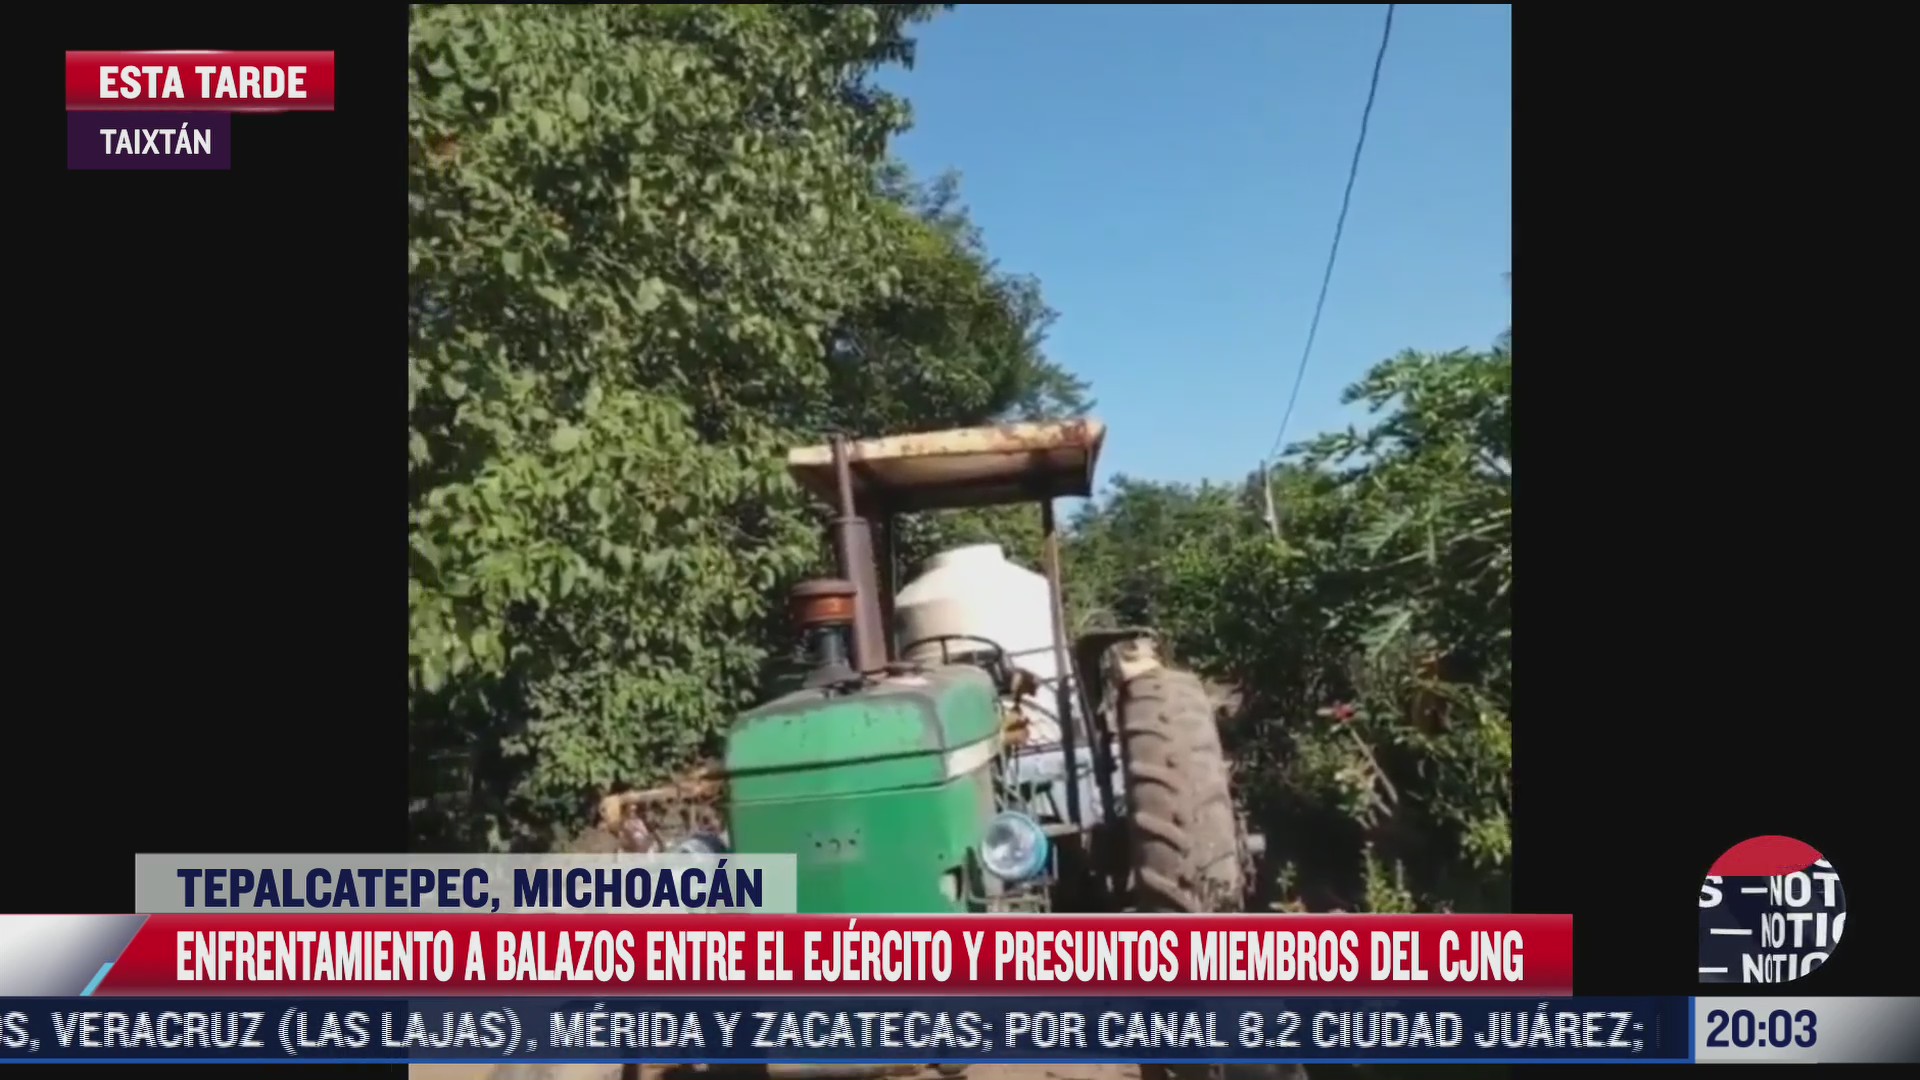 ejercito se vuelve a enfrentar al cjng en tepalcatepec michoacan